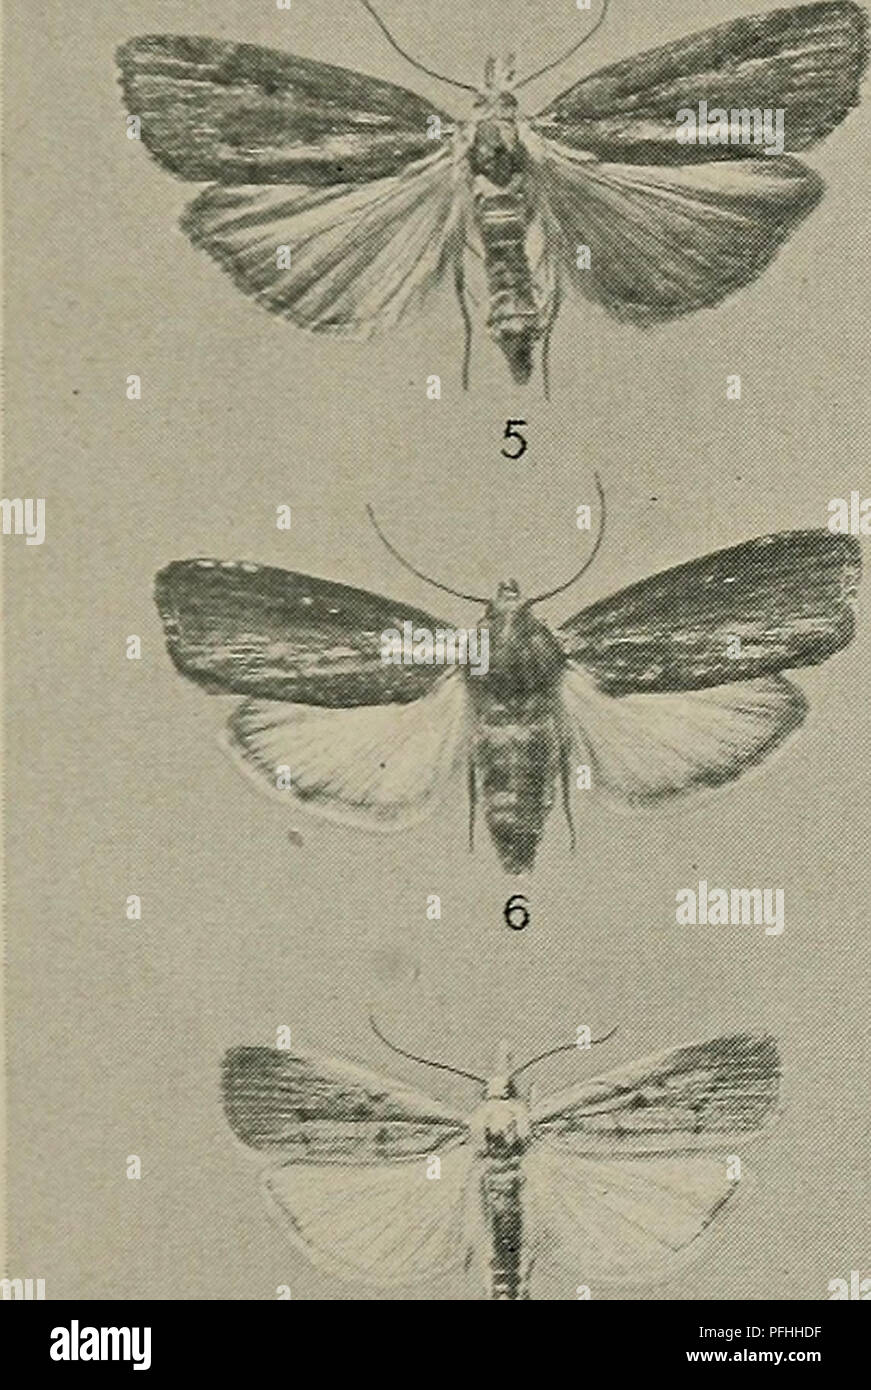 . Danmarks Fauna; illustrerede haandbøger über den Danske dyreverden... . 12 ^^^^^^^*s 13 15 16 17 3. A. grisella. 4. M. zelleri^. 5. A. sociella^. 6. G. Mello - Nella. 8. C. paludellus. 9. C. fascelinellus. 10, 11. C. inquinatellus. 12. C. geniculeus. 13. C. contaminellus. 15. C. salinellus. 16. C. poliellus. 17. C. deliellus.. Bitte beachten Sie, dass diese Bilder sind von der gescannten Seite Bilder, die digital für die Lesbarkeit verbessert haben mögen - Färbung und Aussehen dieser Abbildungen können nicht perfekt dem Original ähneln. extrahiert. Dansk naturhistorisk Forening. København, G.E.C. Stockfoto